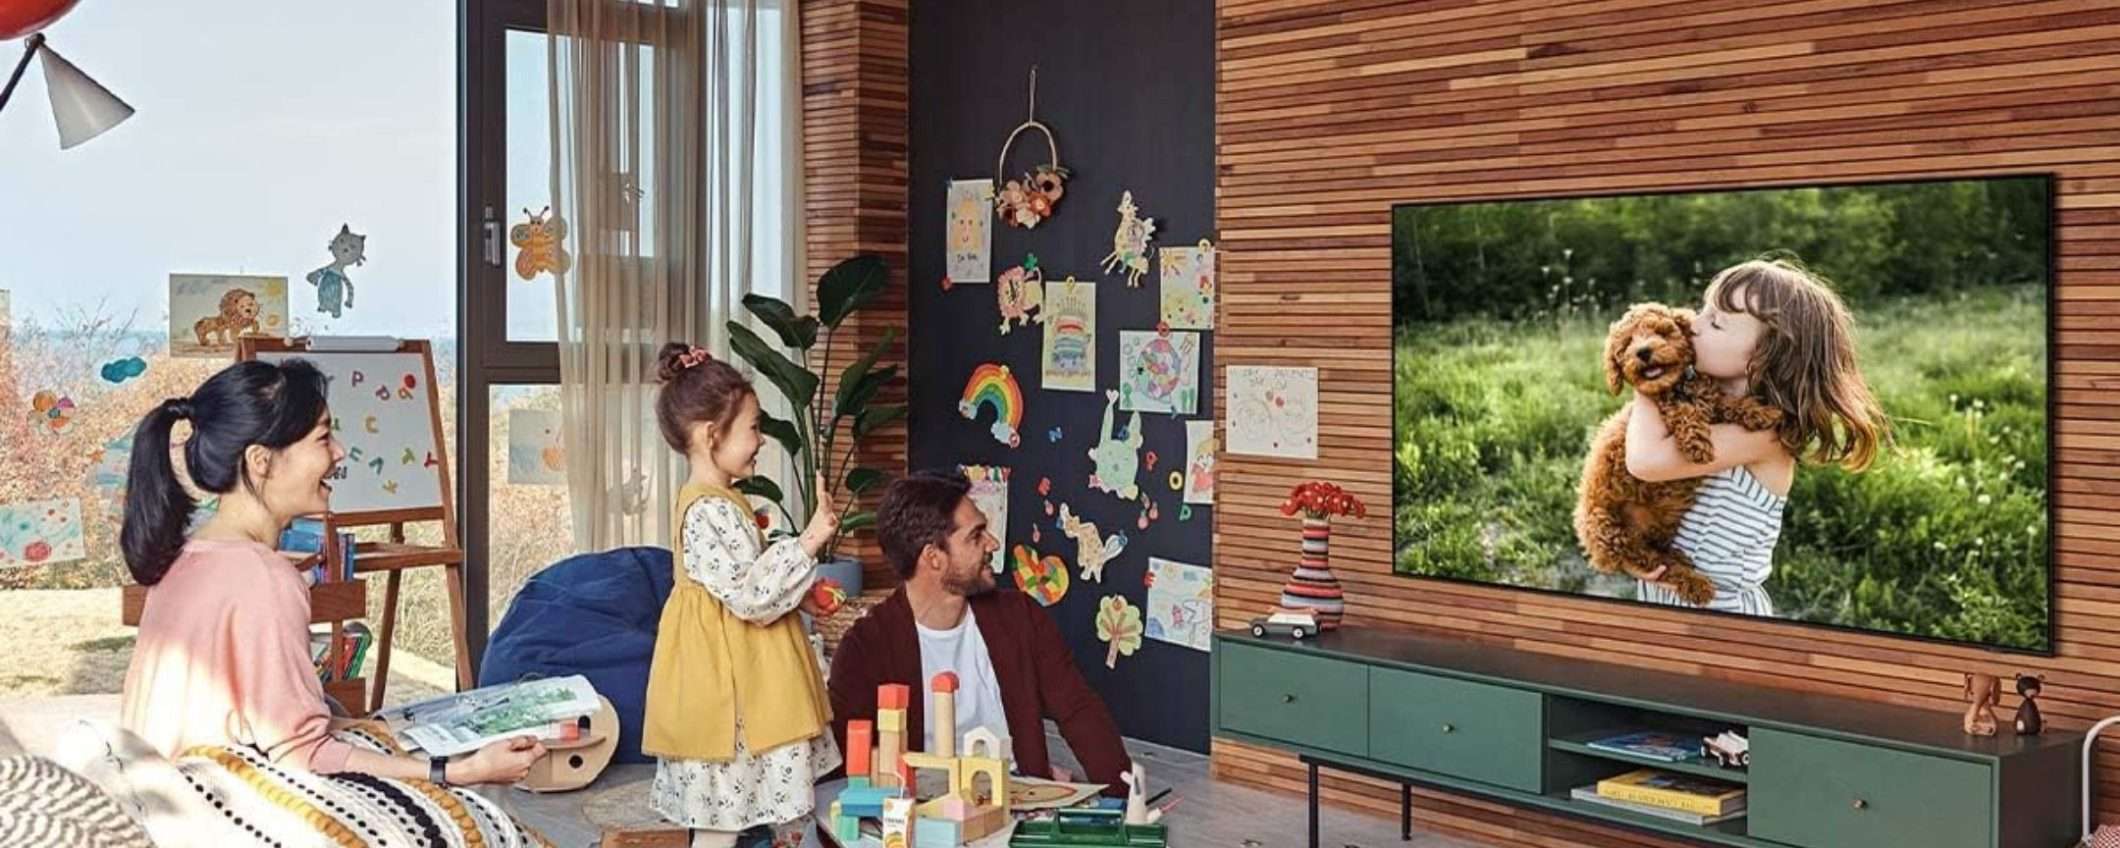 IMMAGINI PERFETTE con la smart TV Samsung QLED UHD 4K: 33% in meno